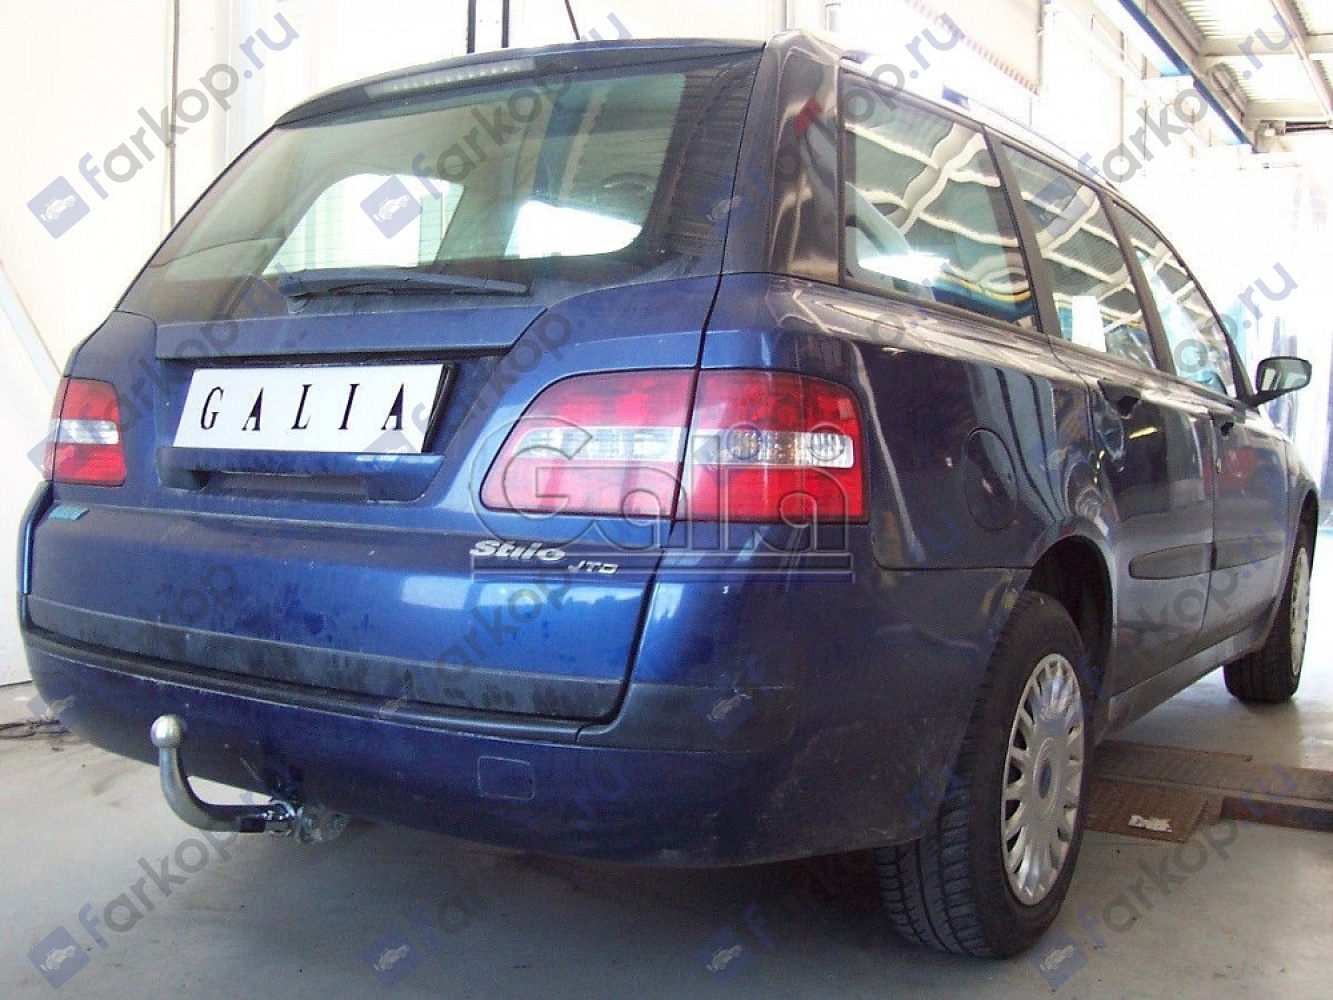 Фаркоп Galia для Fiat Stilo (универсал) 2001-2007 F087C в 